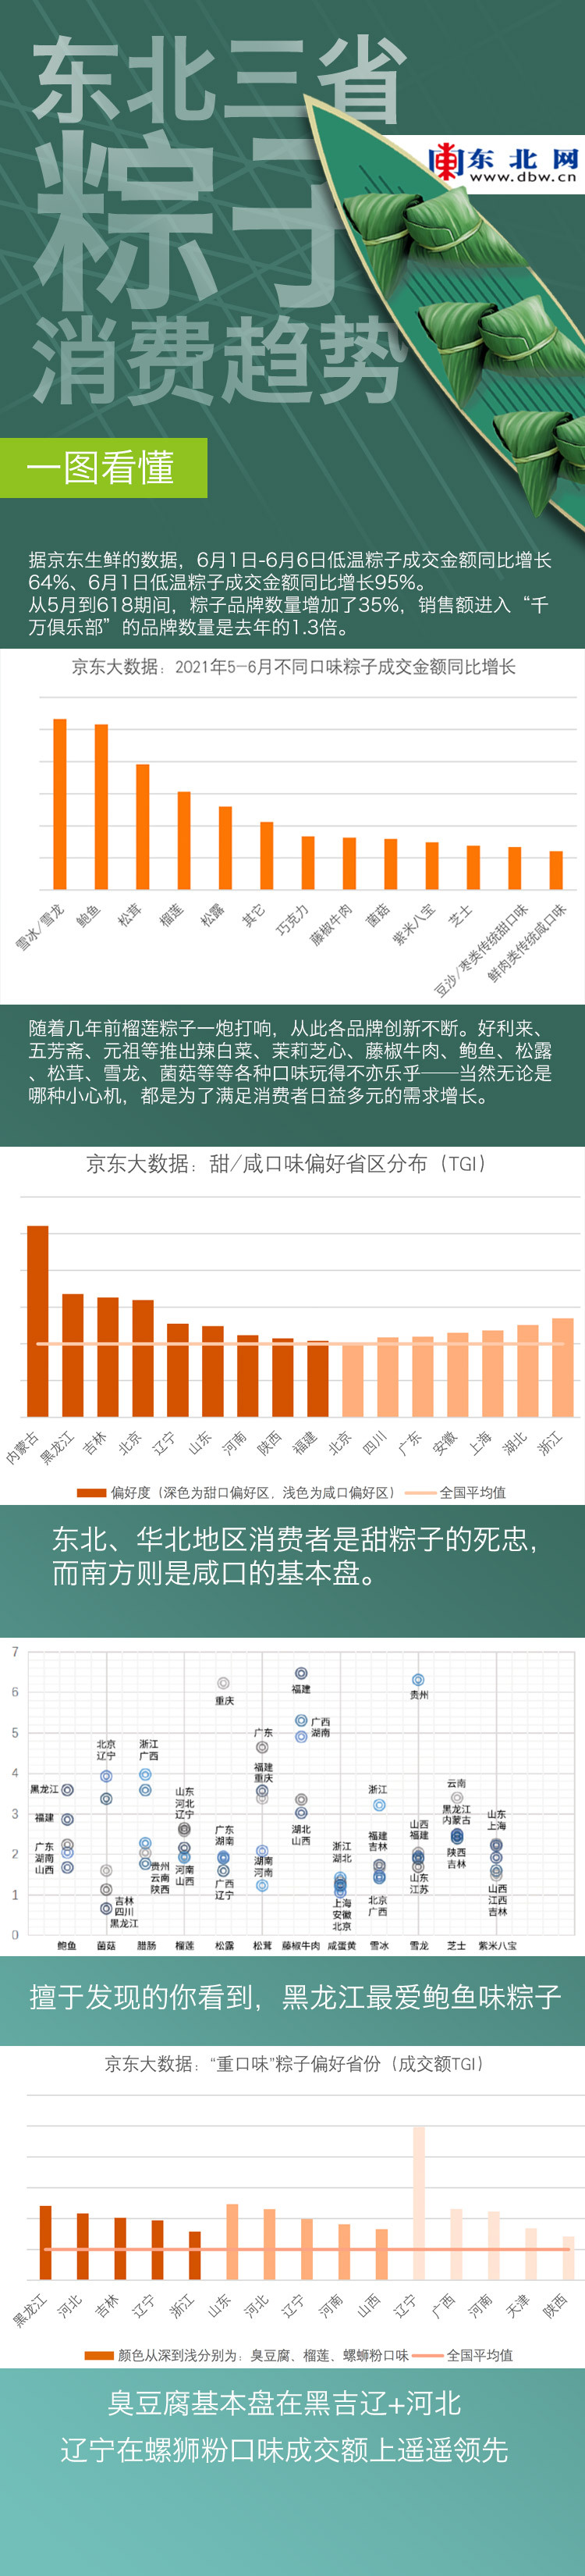 一图看懂东北三省粽子消费数据